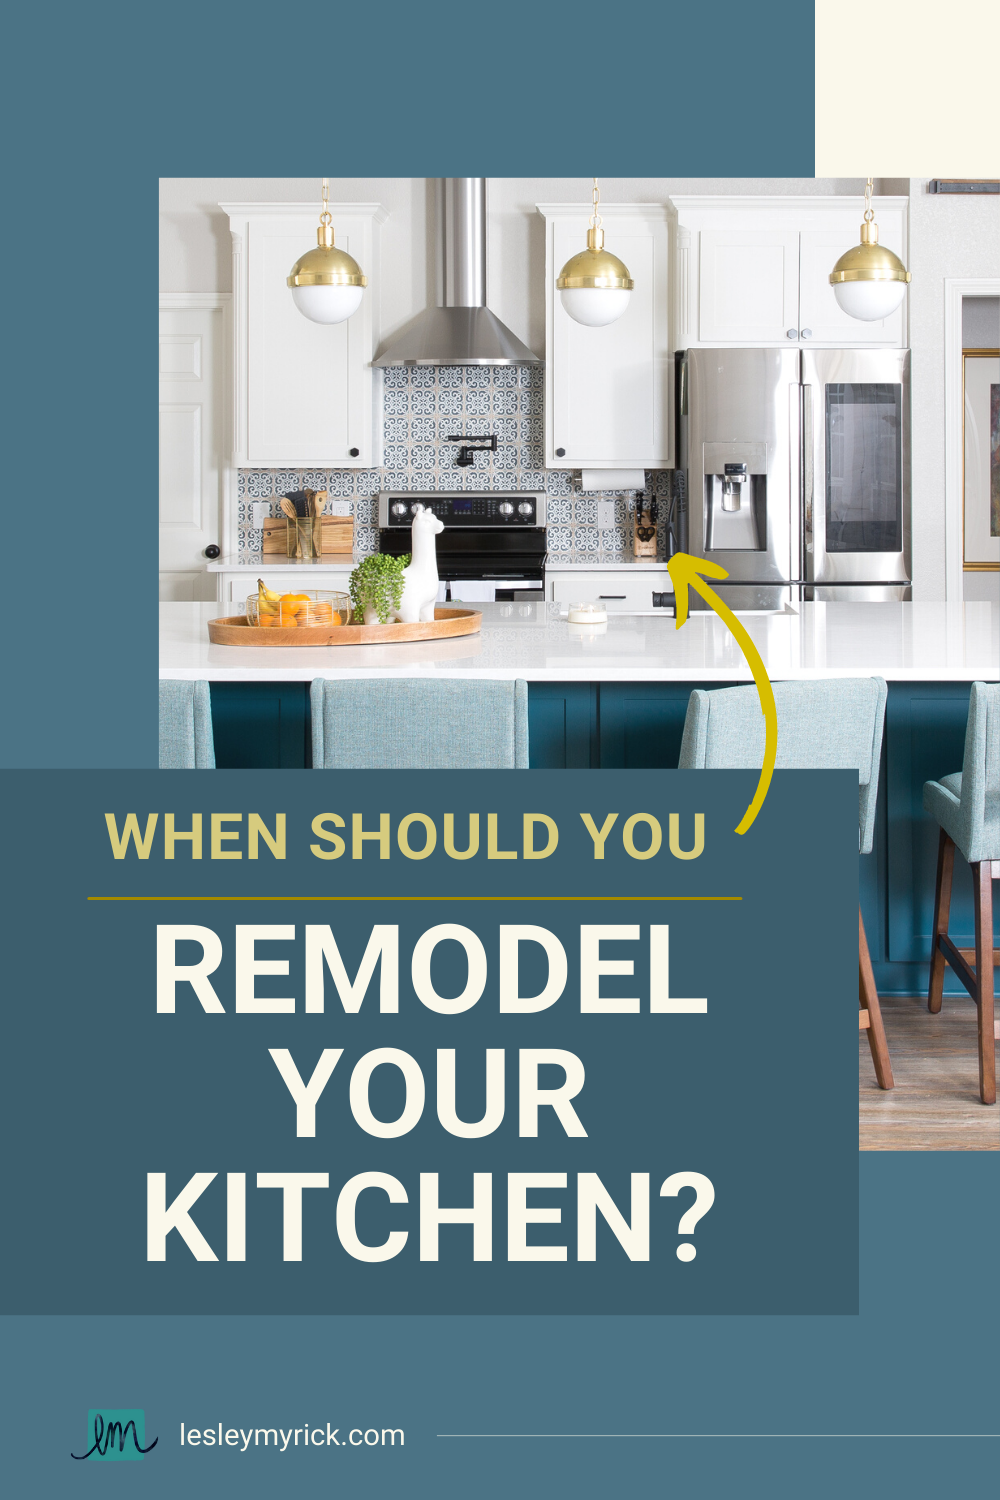 When should you remodel your kitchen? Interior designer Lesley Myrick has 5 tips.